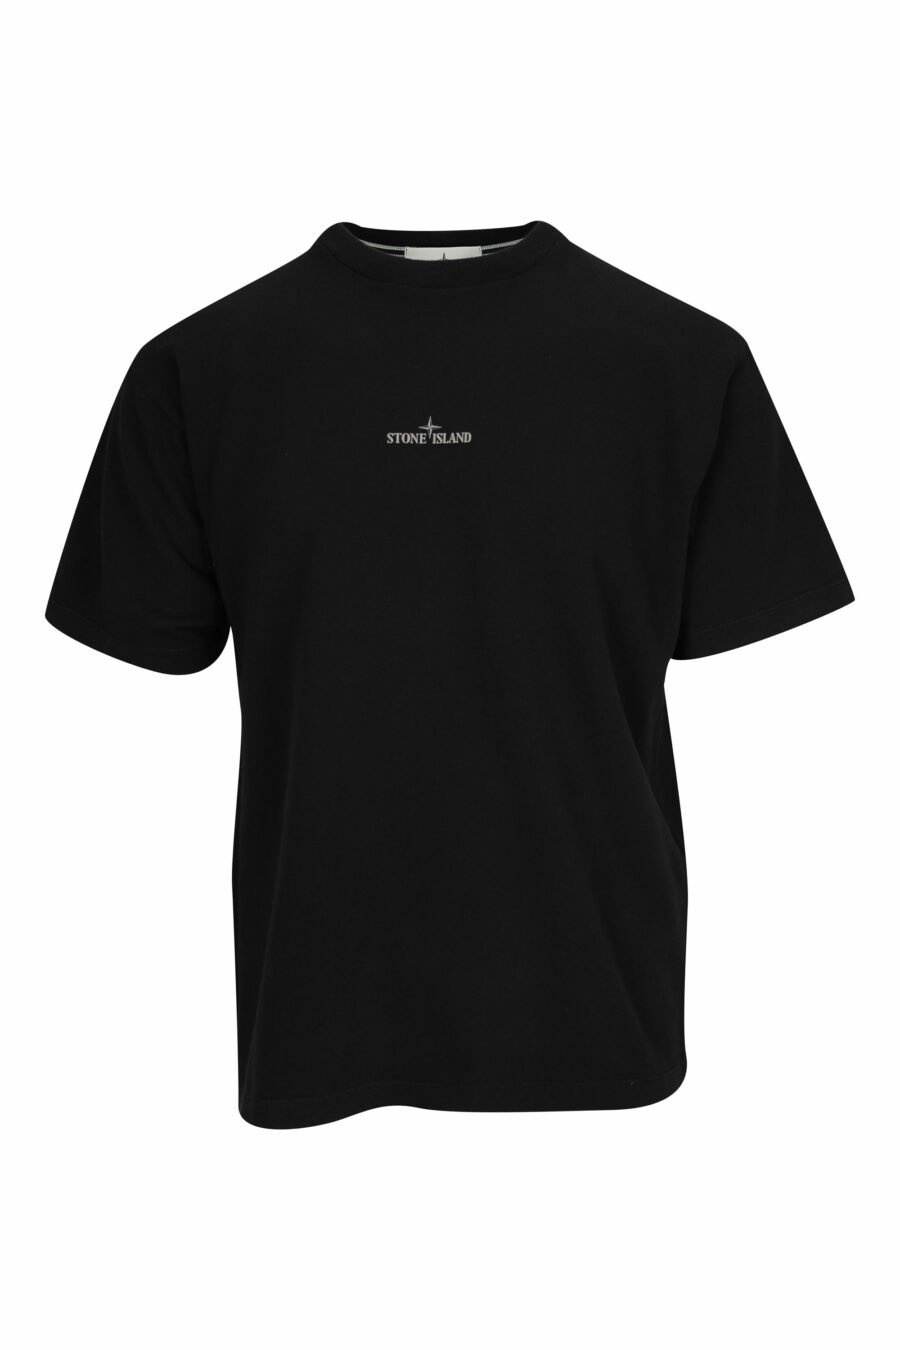 Schwarzes T-Shirt mit kleinem Logo auf der Vorderseite - 8052572910081